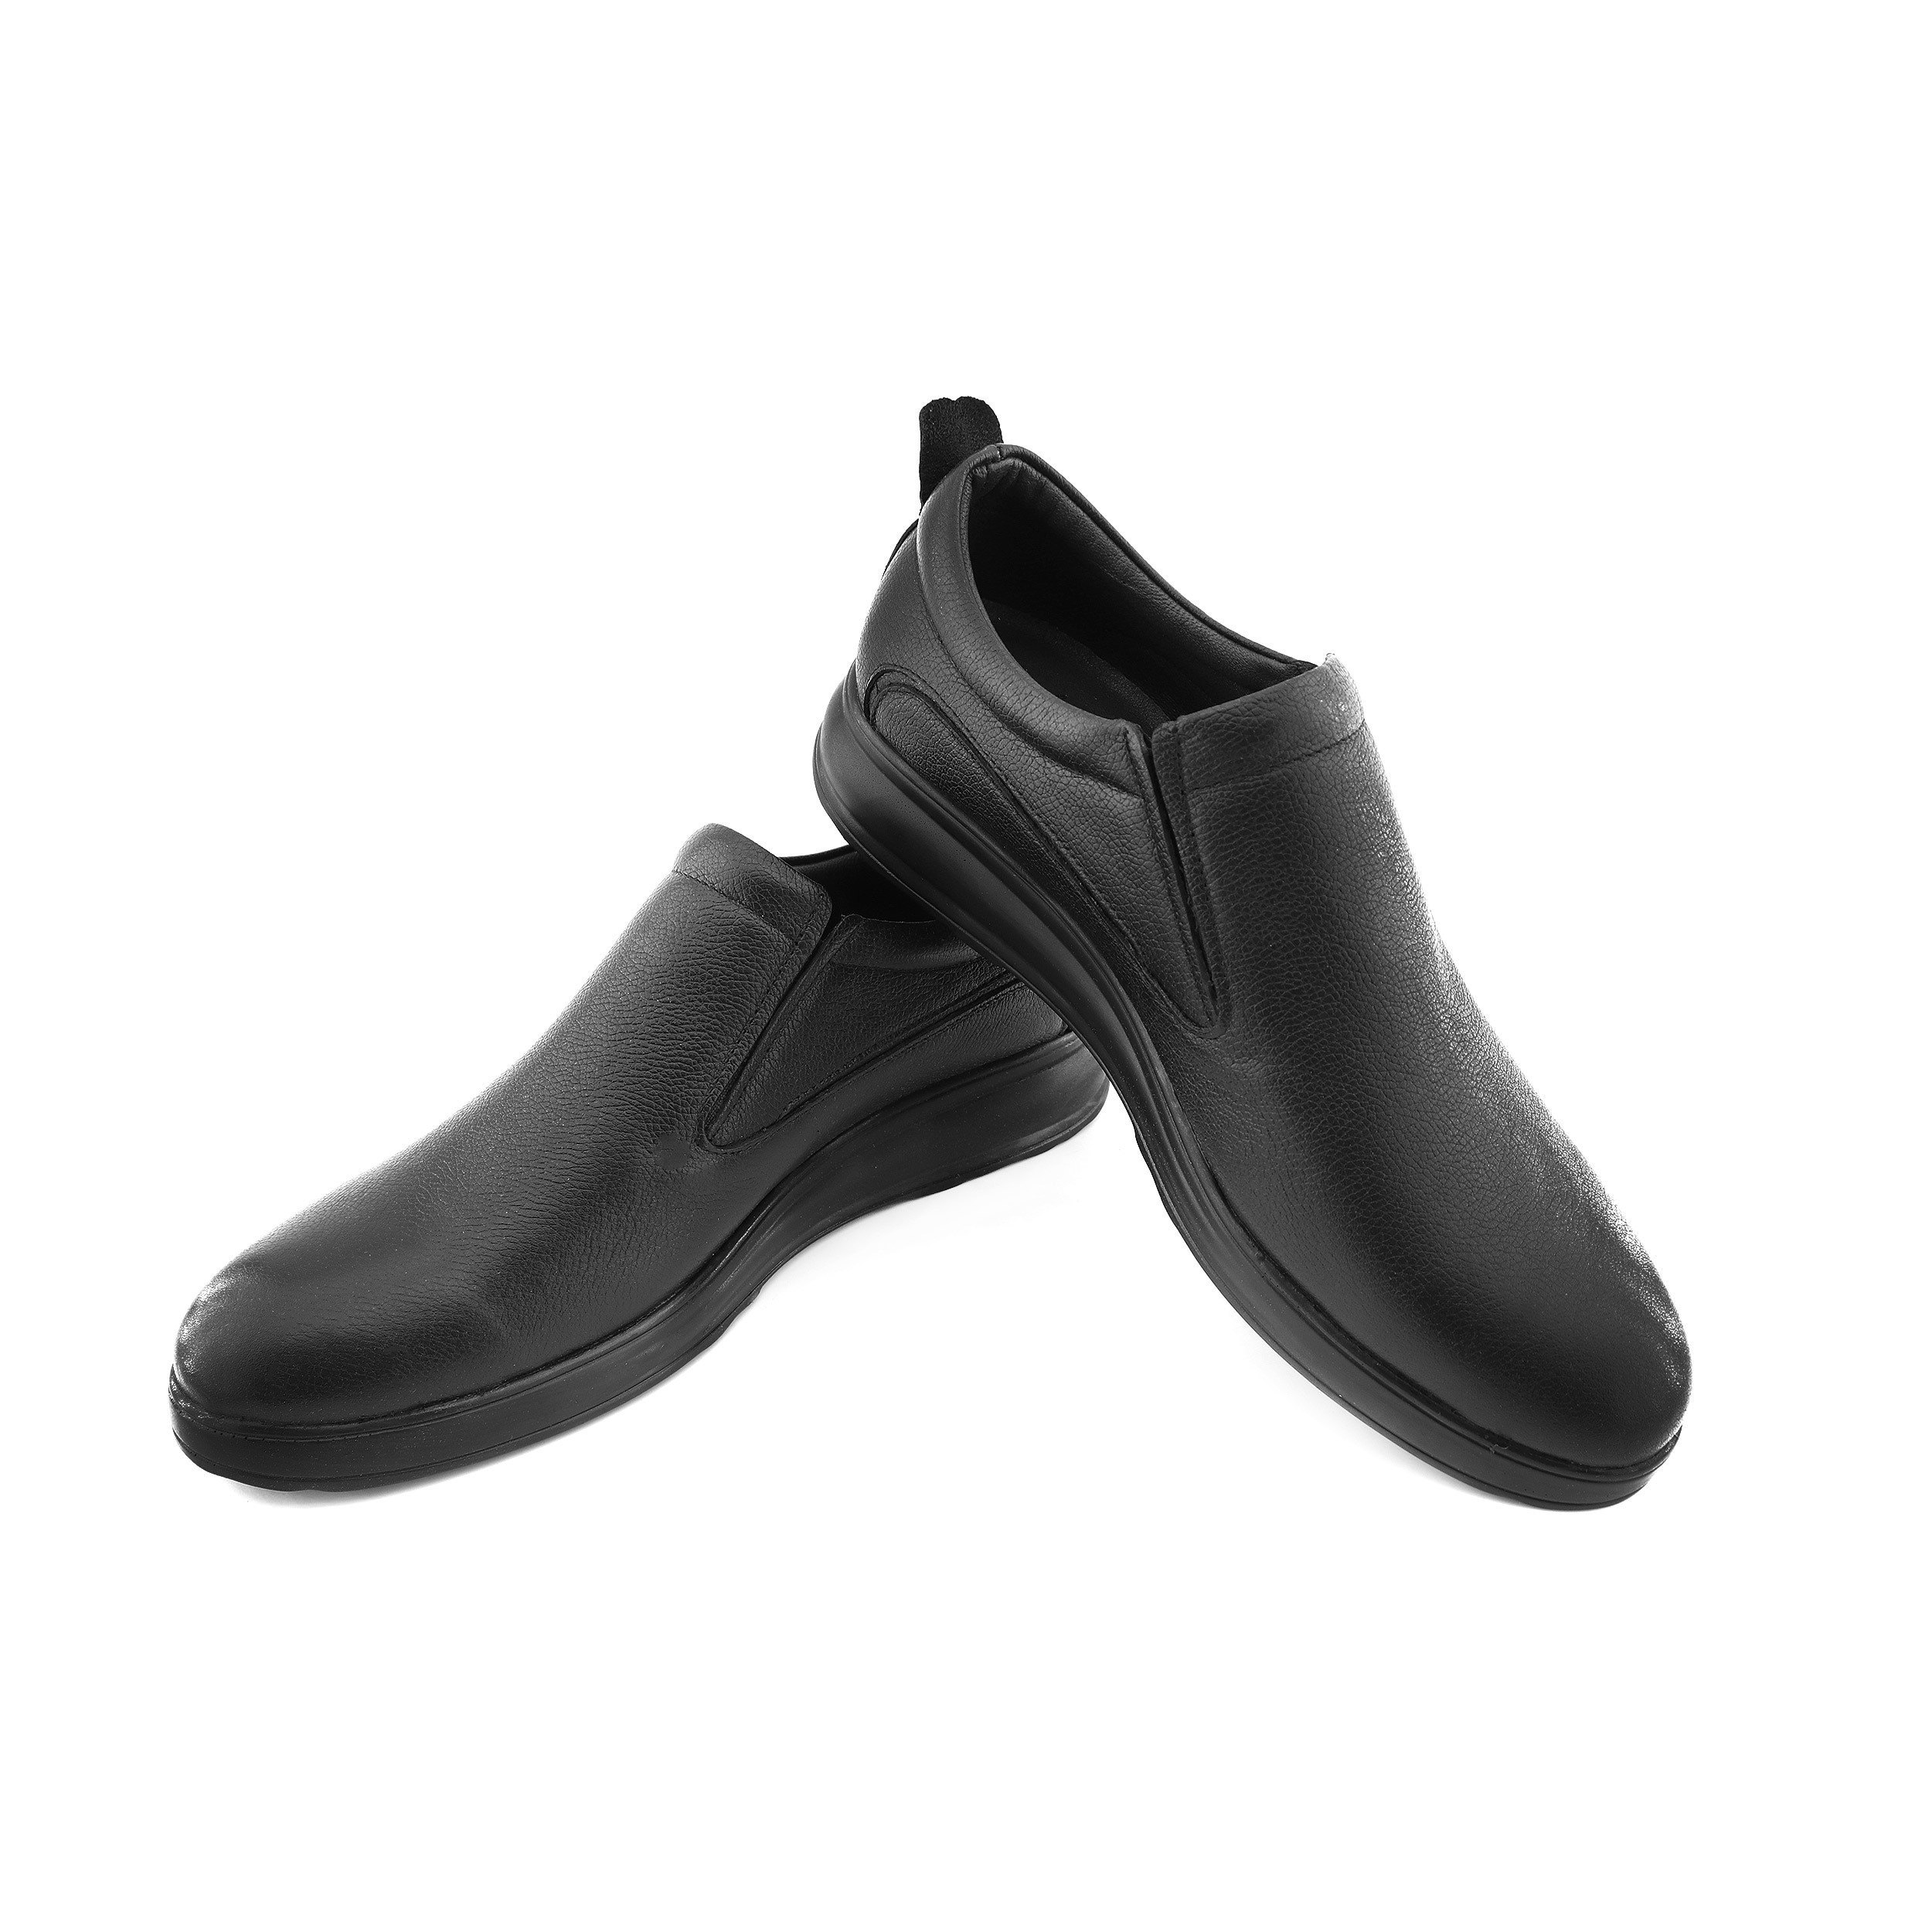 خرید آنلاین کفش طبی مردانه پاتکان مدل s441 کد 01